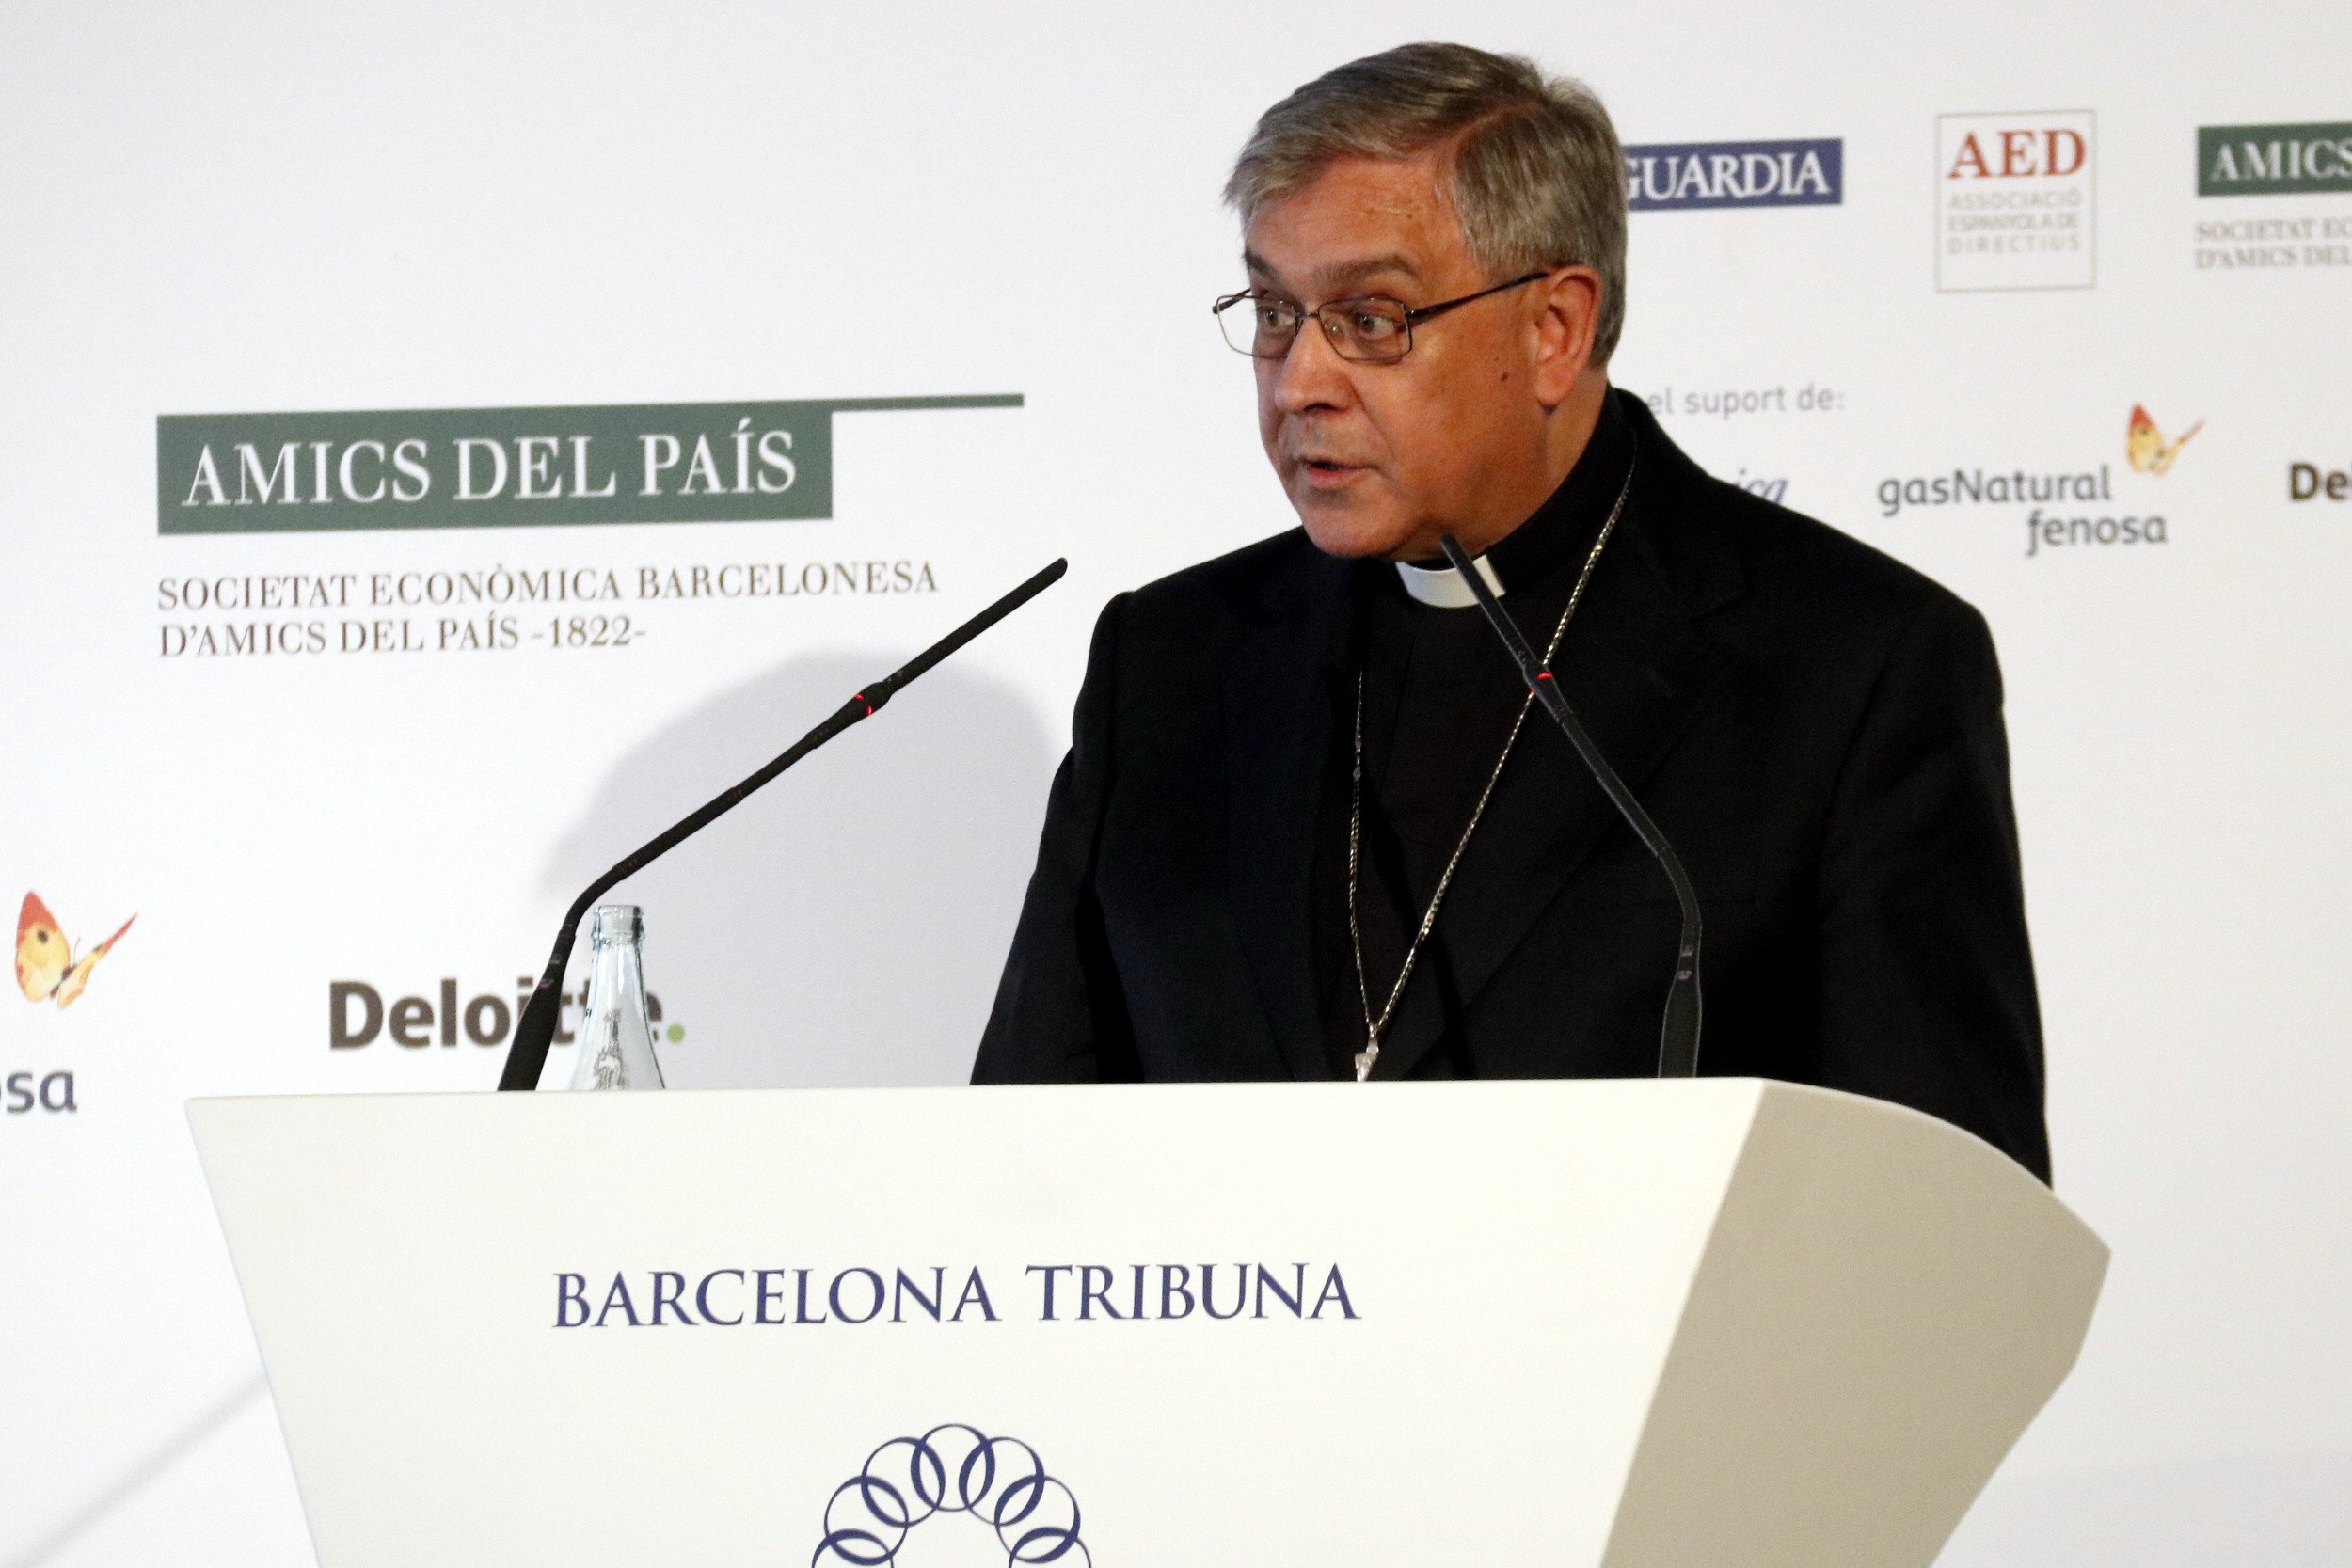 El abad de Montserrat pide una solución "sin que nadie salga humillado"